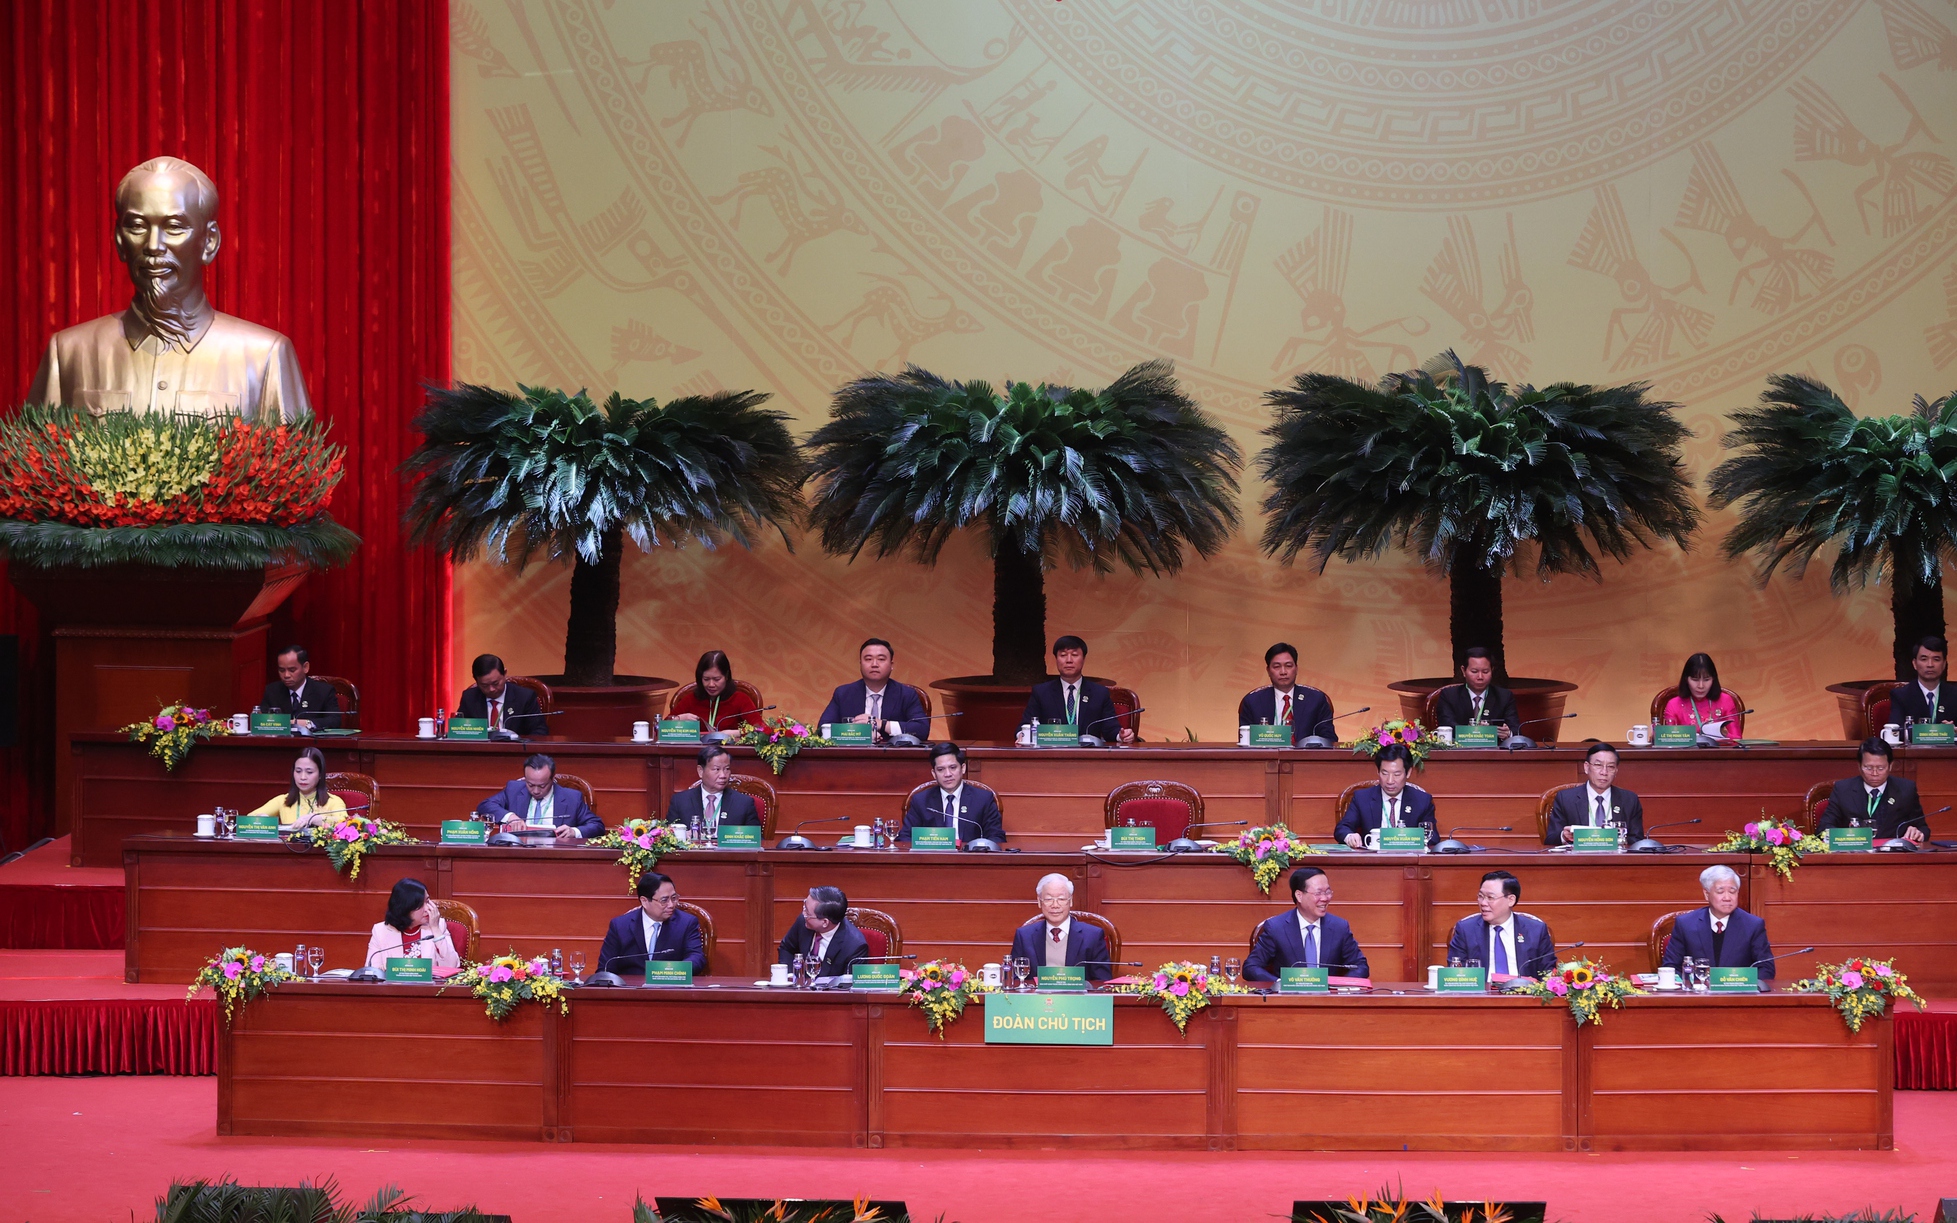 Hình ảnh khai mạc trọng thể Đại hội đại biểu toàn quốc Hội Nông dân Việt Nam lần thứ VIII